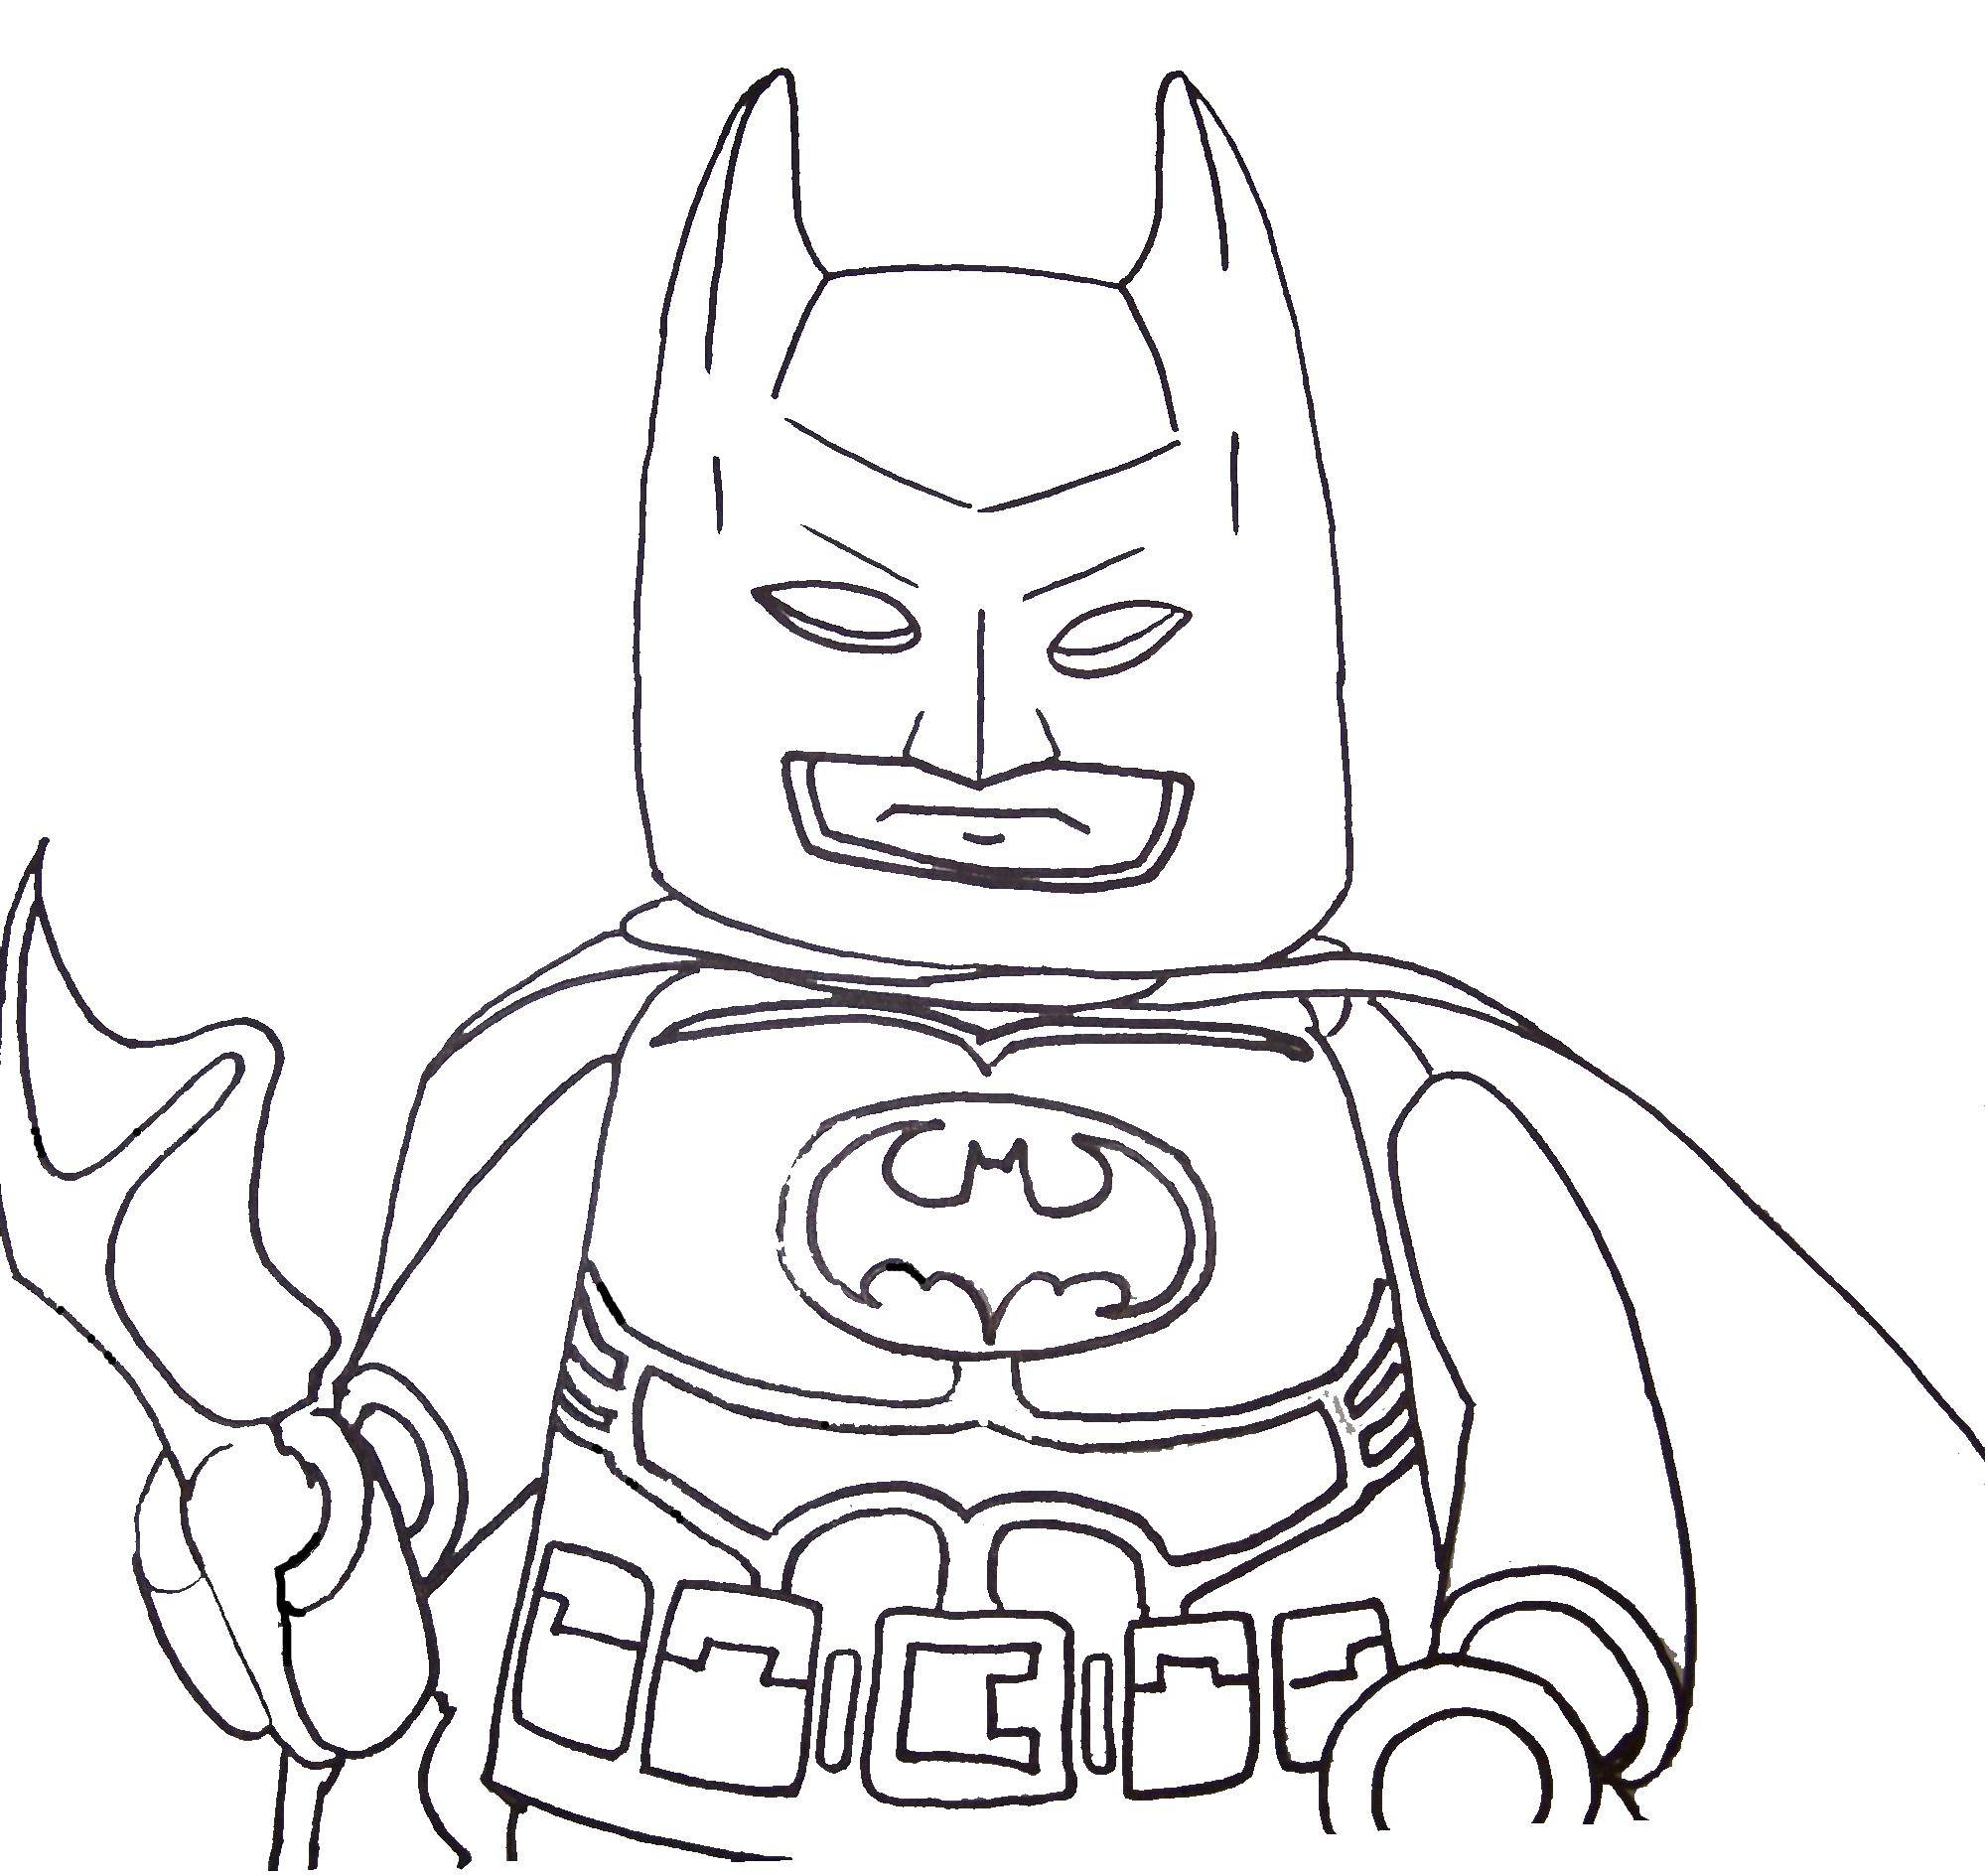 Название: Раскраска Лего бэтмен.. Категория: Для мальчиков. Теги: лего, конструктор, бэтмен, для мальчиков.